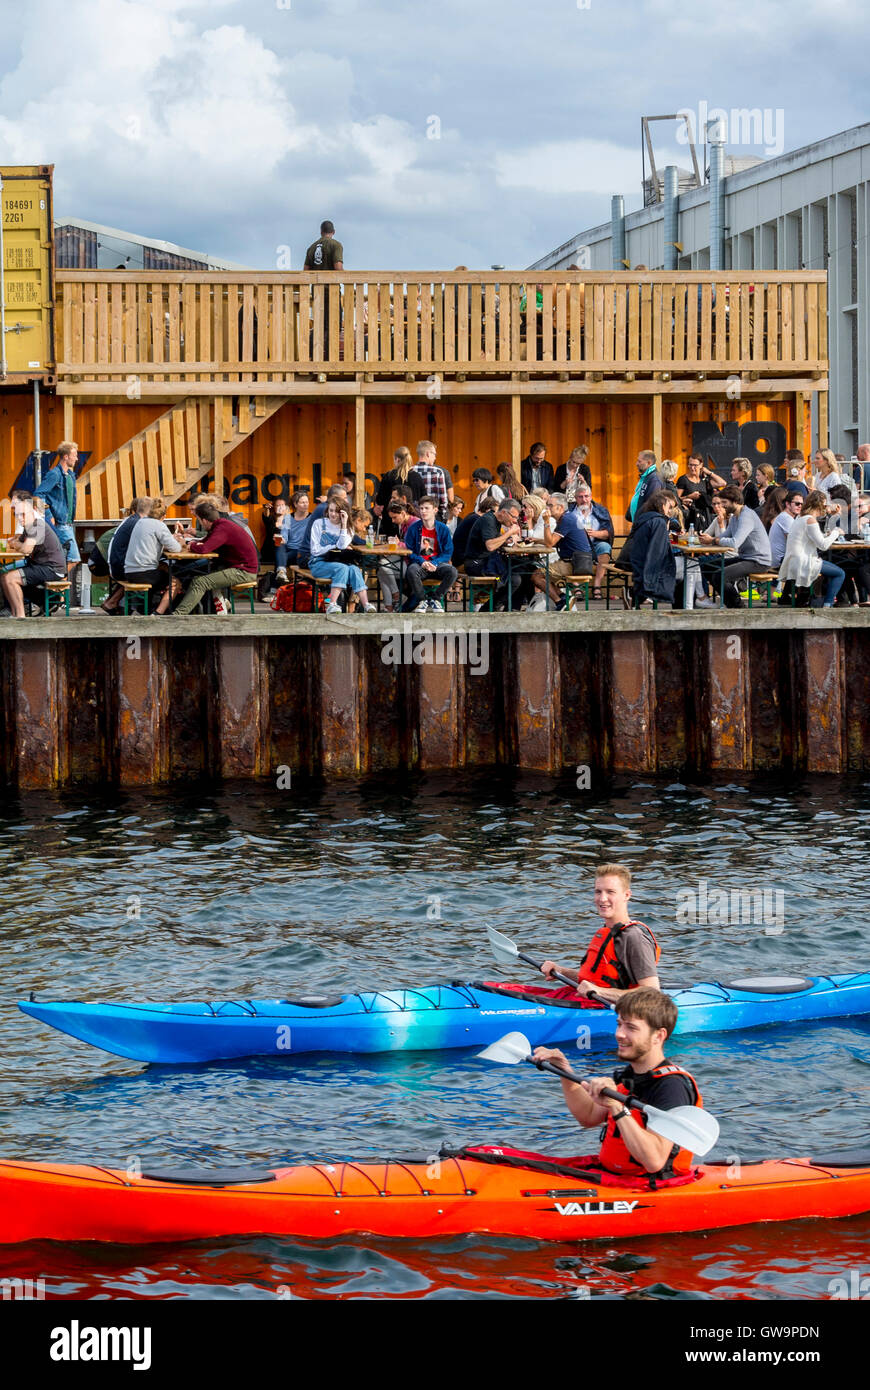 Copenhague, Danemark, foule de personnes, le partage des repas sur la zone portuaire rénové, sur l'alimentation de rue l'île 'papier', kayaks sur canal Banque D'Images